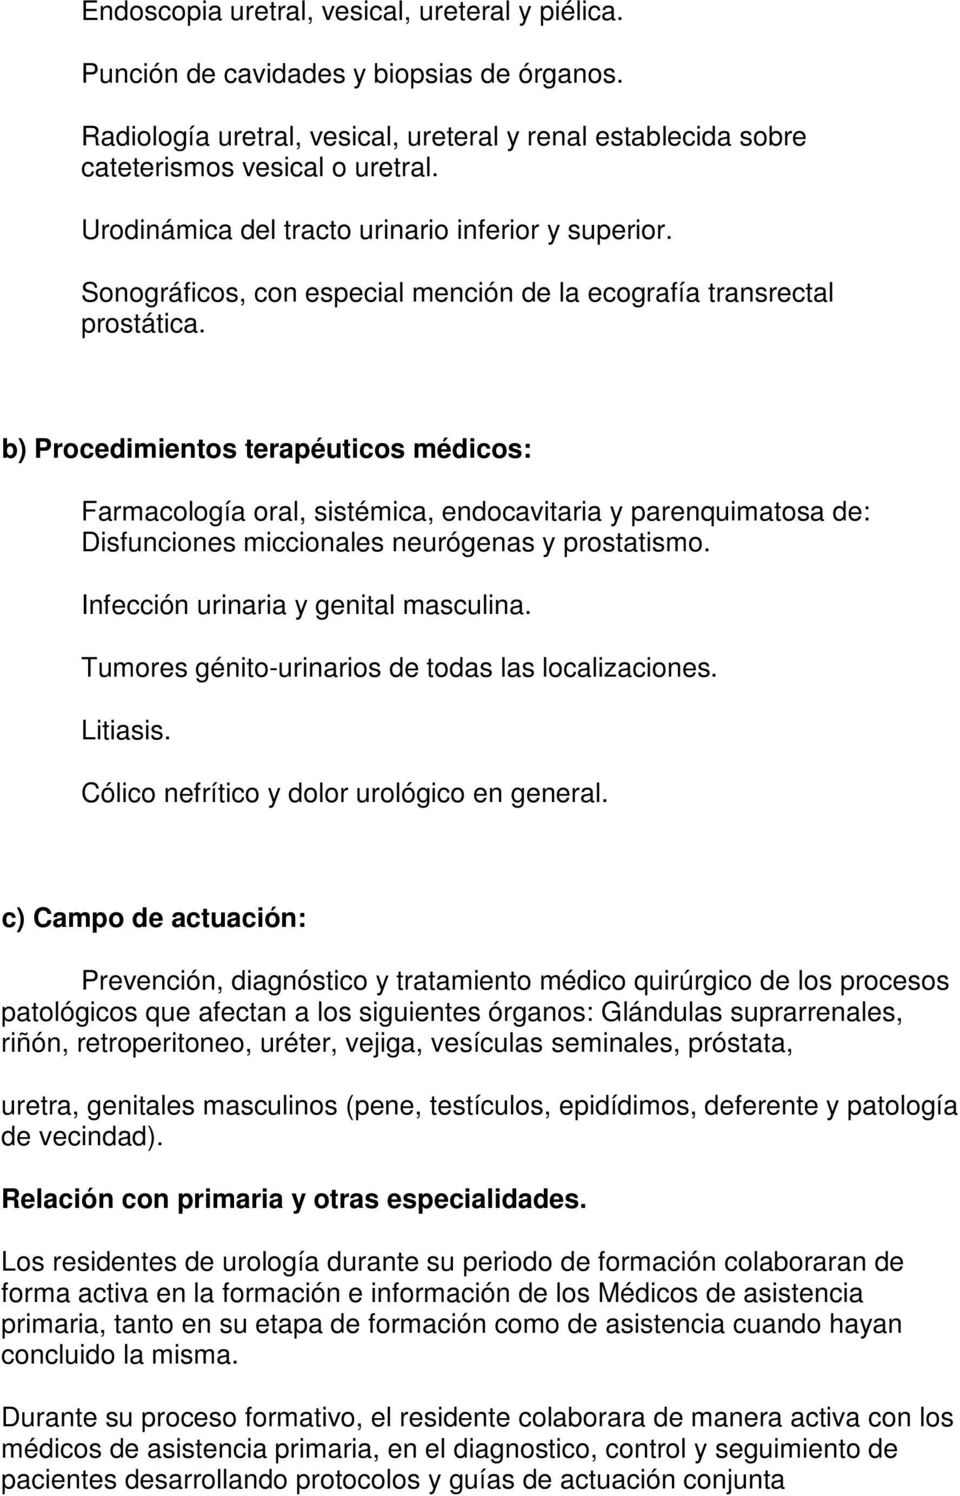 b) Procedimientos terapéuticos médicos: Farmacología oral, sistémica, endocavitaria y parenquimatosa de: Disfunciones miccionales neurógenas y prostatismo. Infección urinaria y genital masculina.